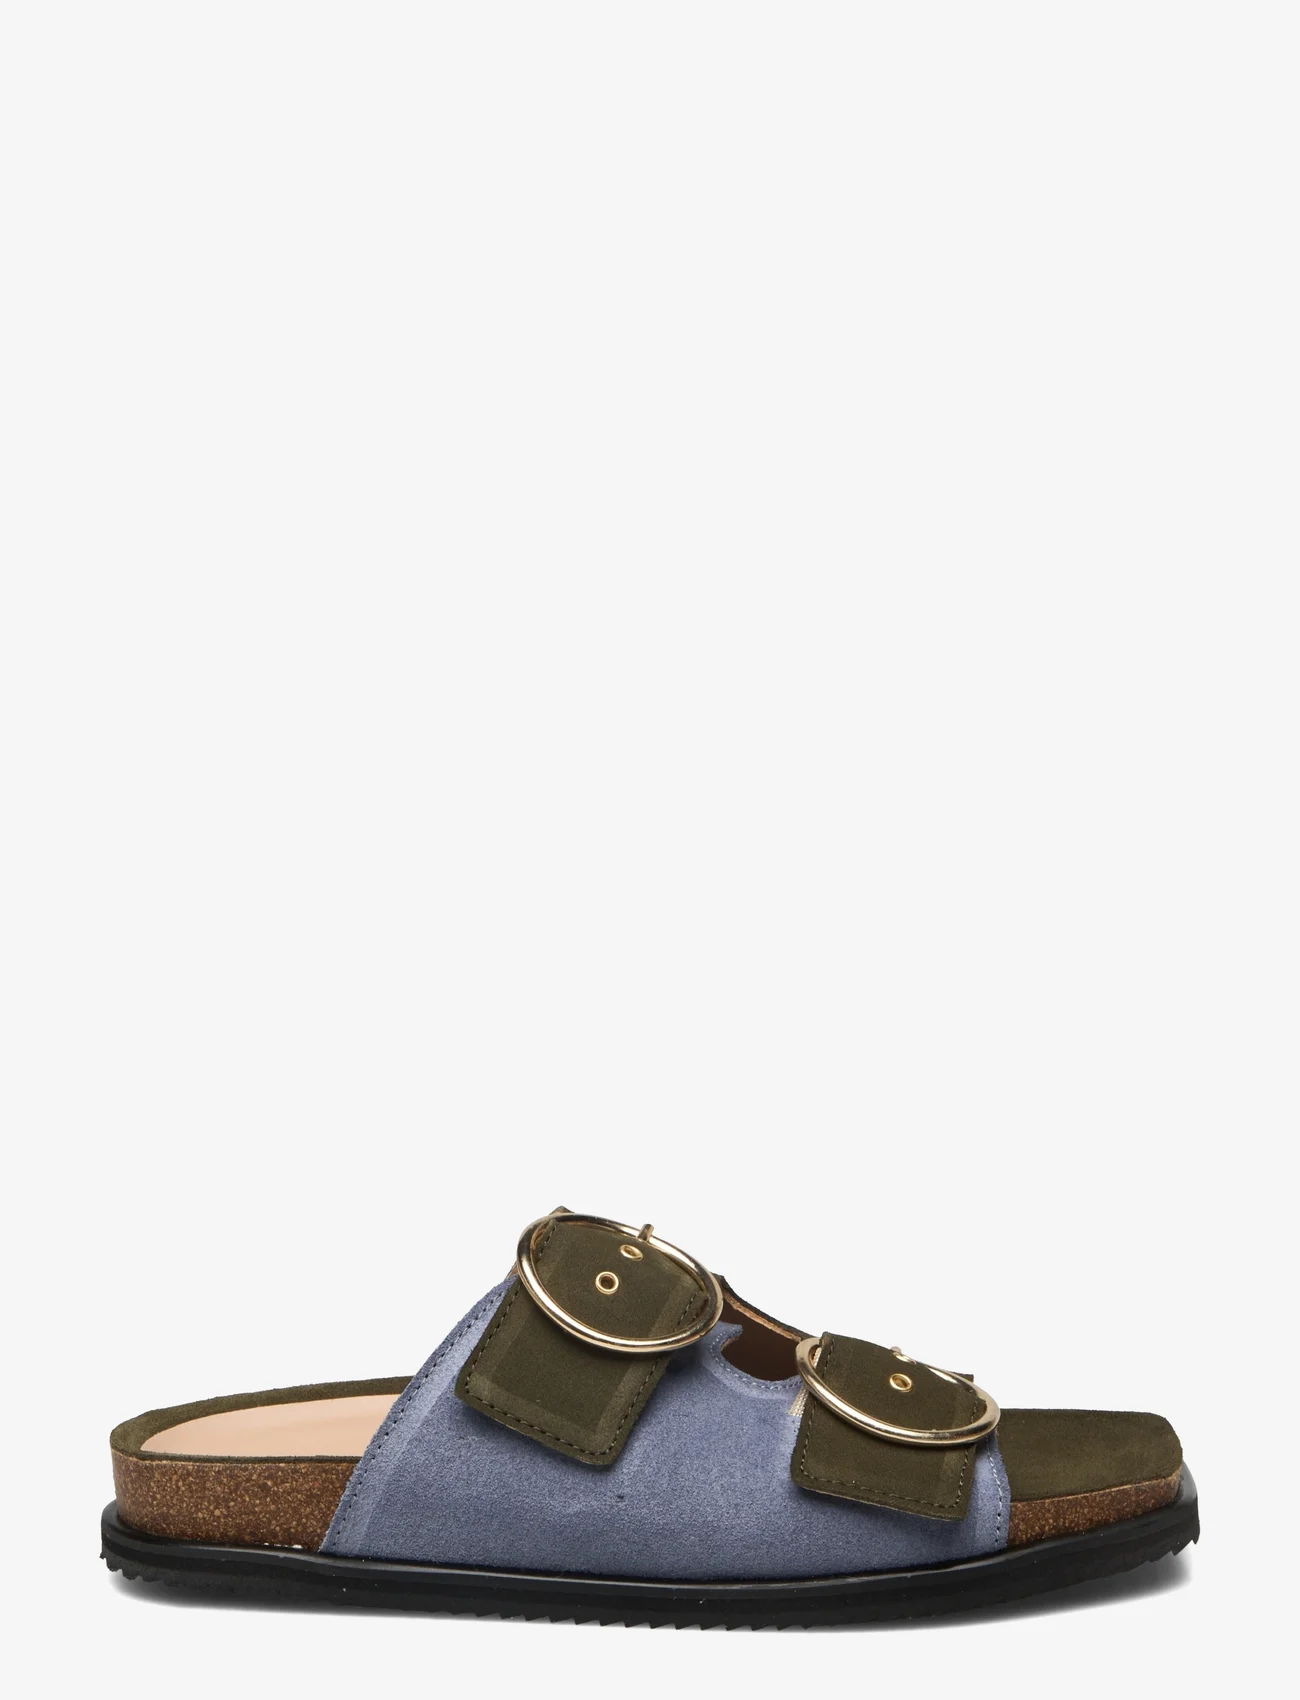 ANGULUS - Sandals - flat - open toe - op - flache sandalen - 2244/2242 light blue/green - 1